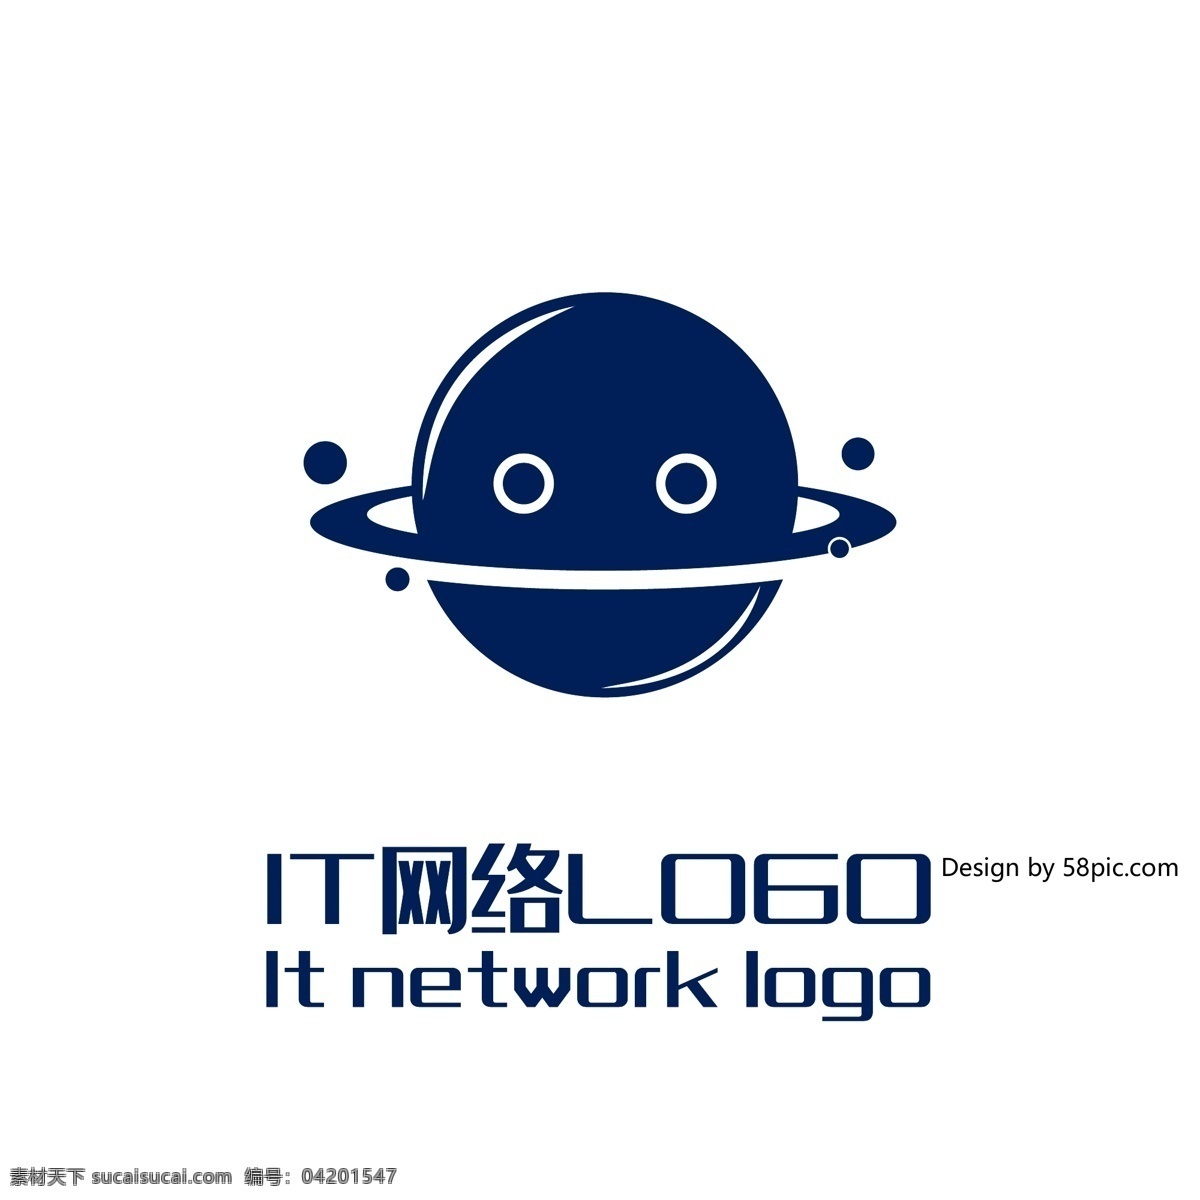 原创 创意 简约 星球 吉祥物 it 网络 logo 可商用 标志